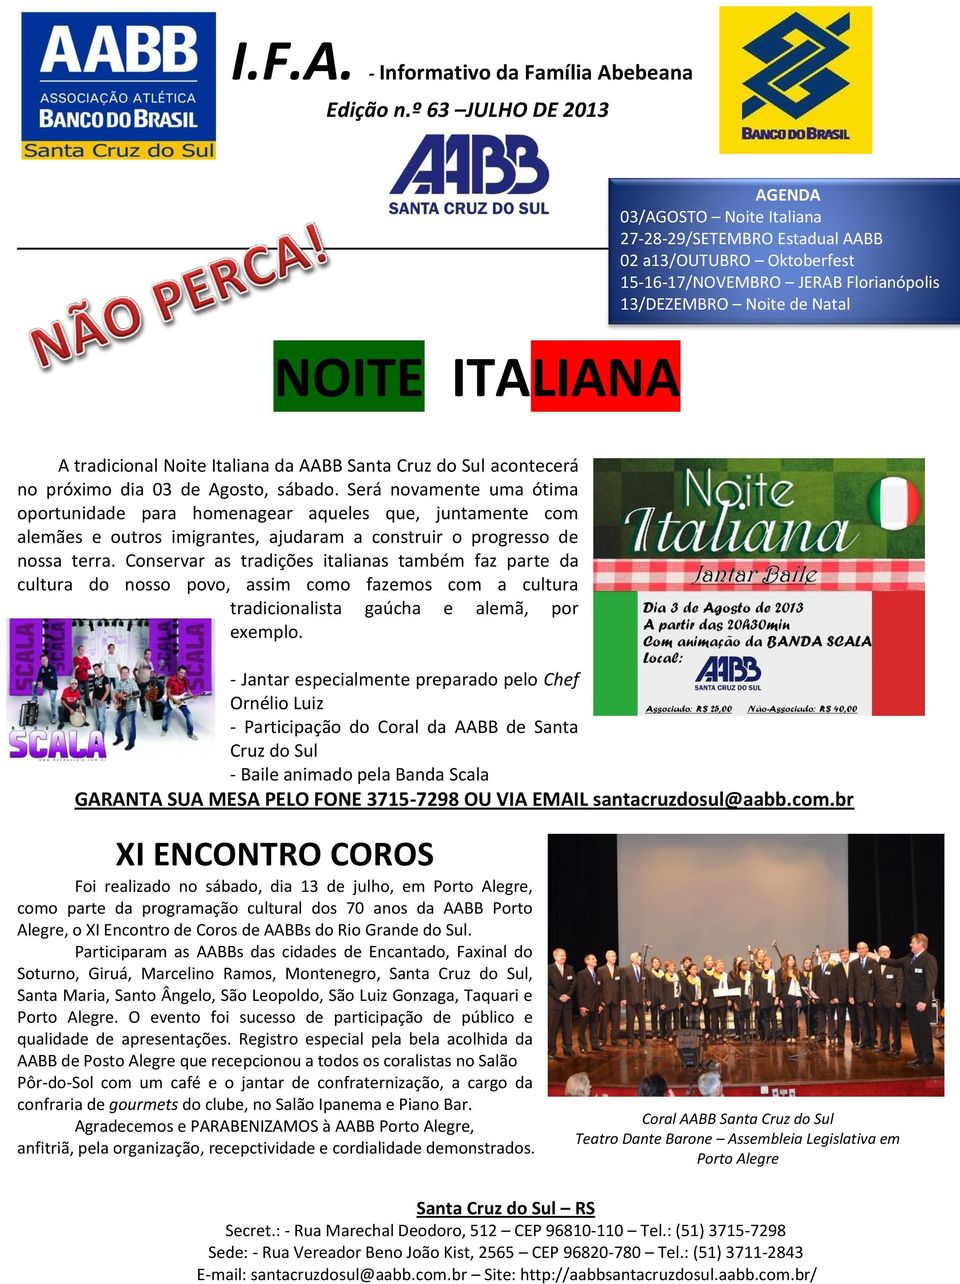 tradicional Noite Italiana da AABB Santa Cruz do Sul acontecerá no próximo dia 03 de Agosto, sábado.